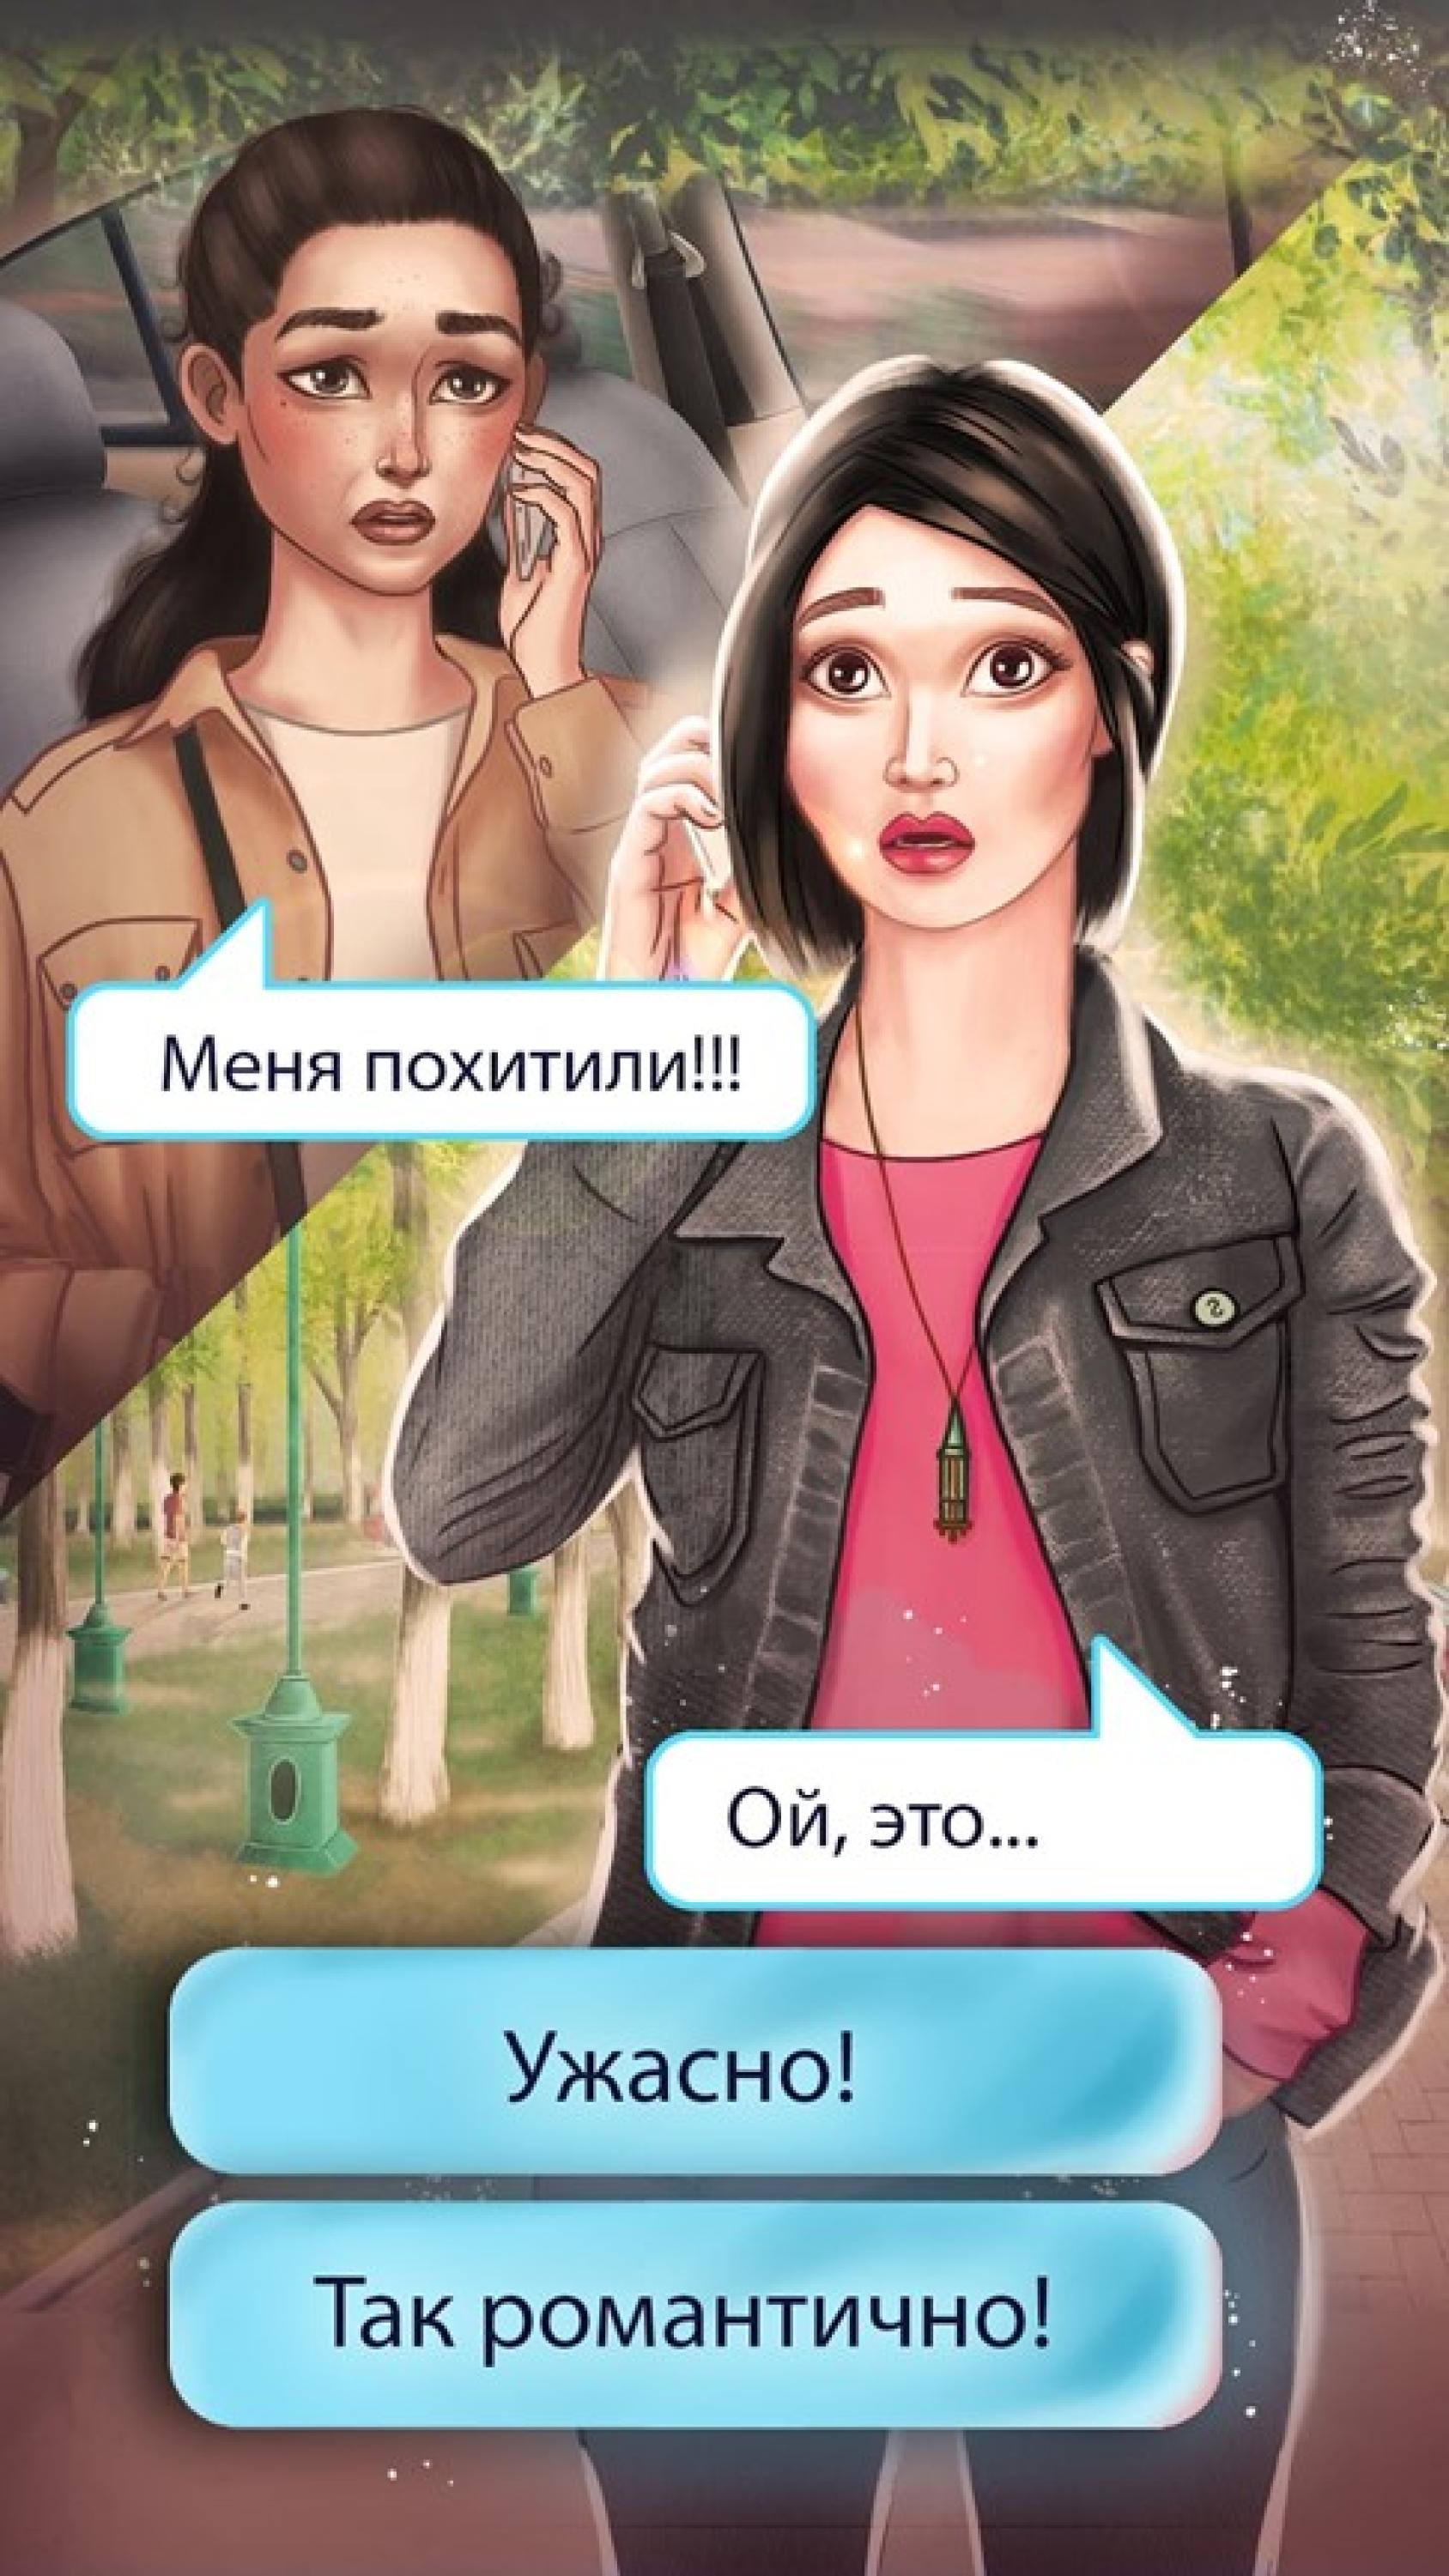 Иллюстрация: две испуганные девушки разговаривают по телефону. Внизу варианты развития диалога.